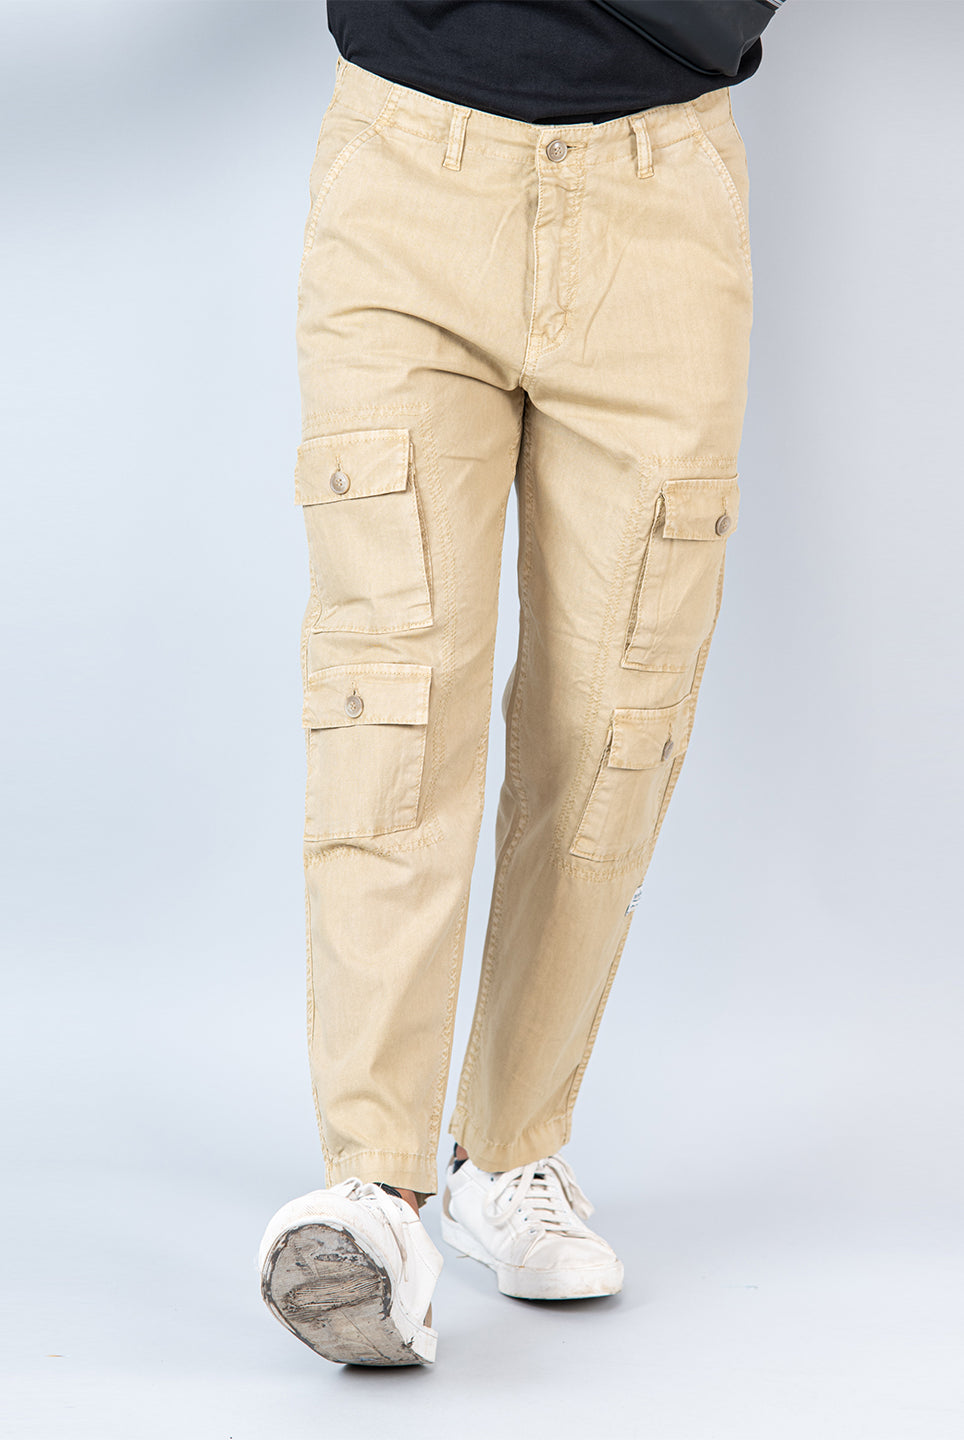 cargo pants for men